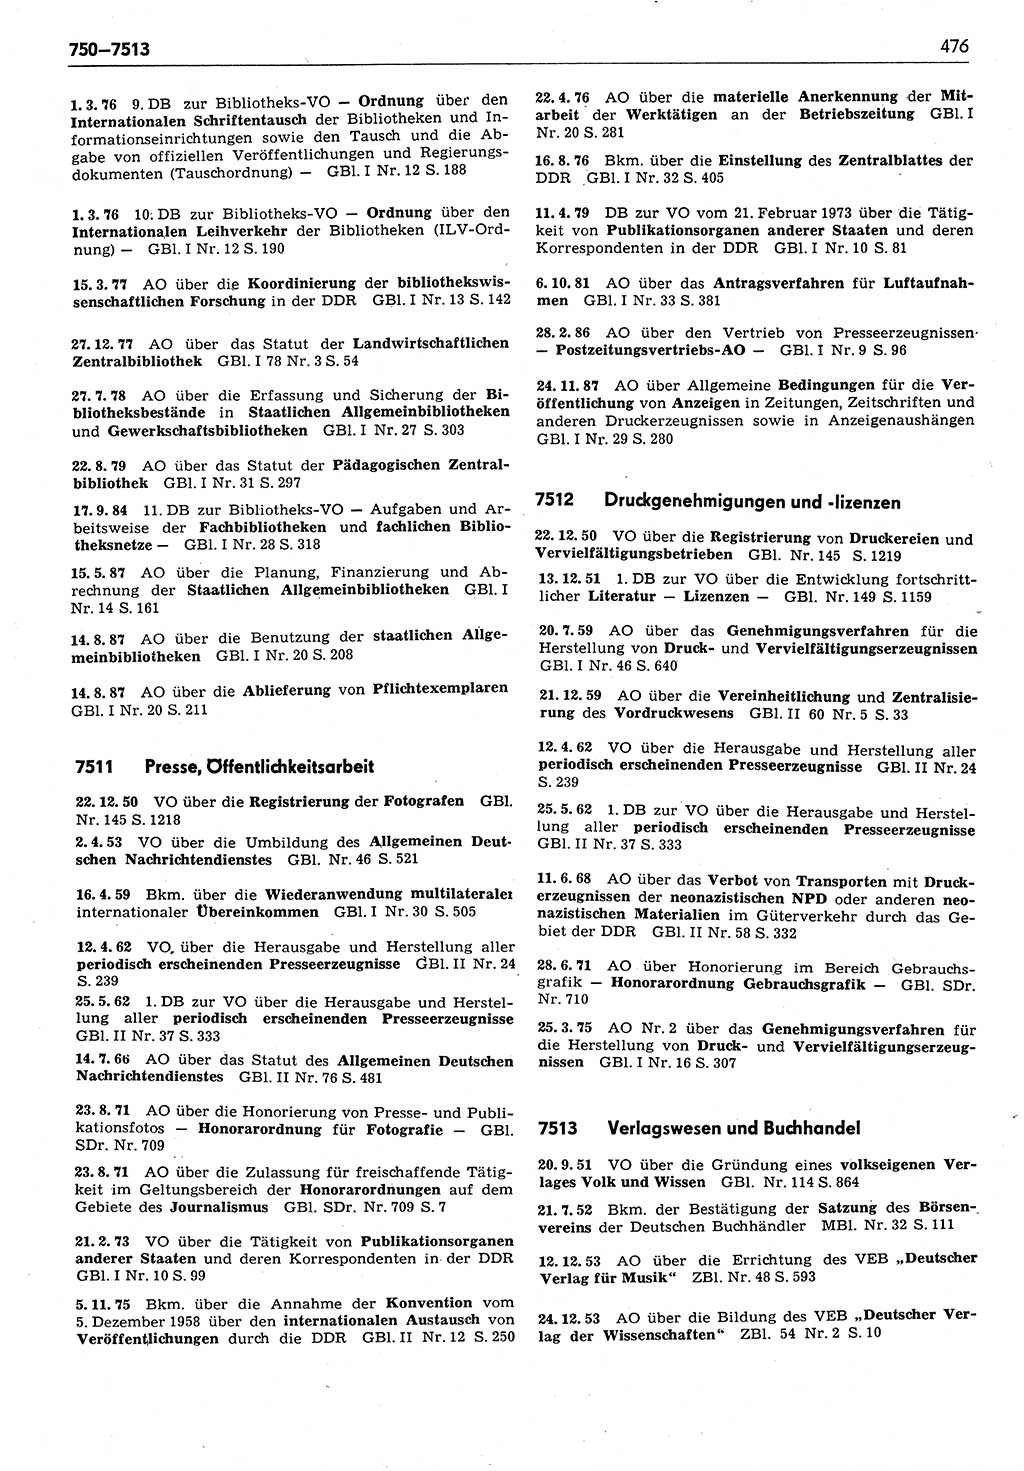 Das geltende Recht der Deutschen Demokratischen Republik (DDR) 1949-1988, Seite 476 (Gelt. R. DDR 1949-1988, S. 476)